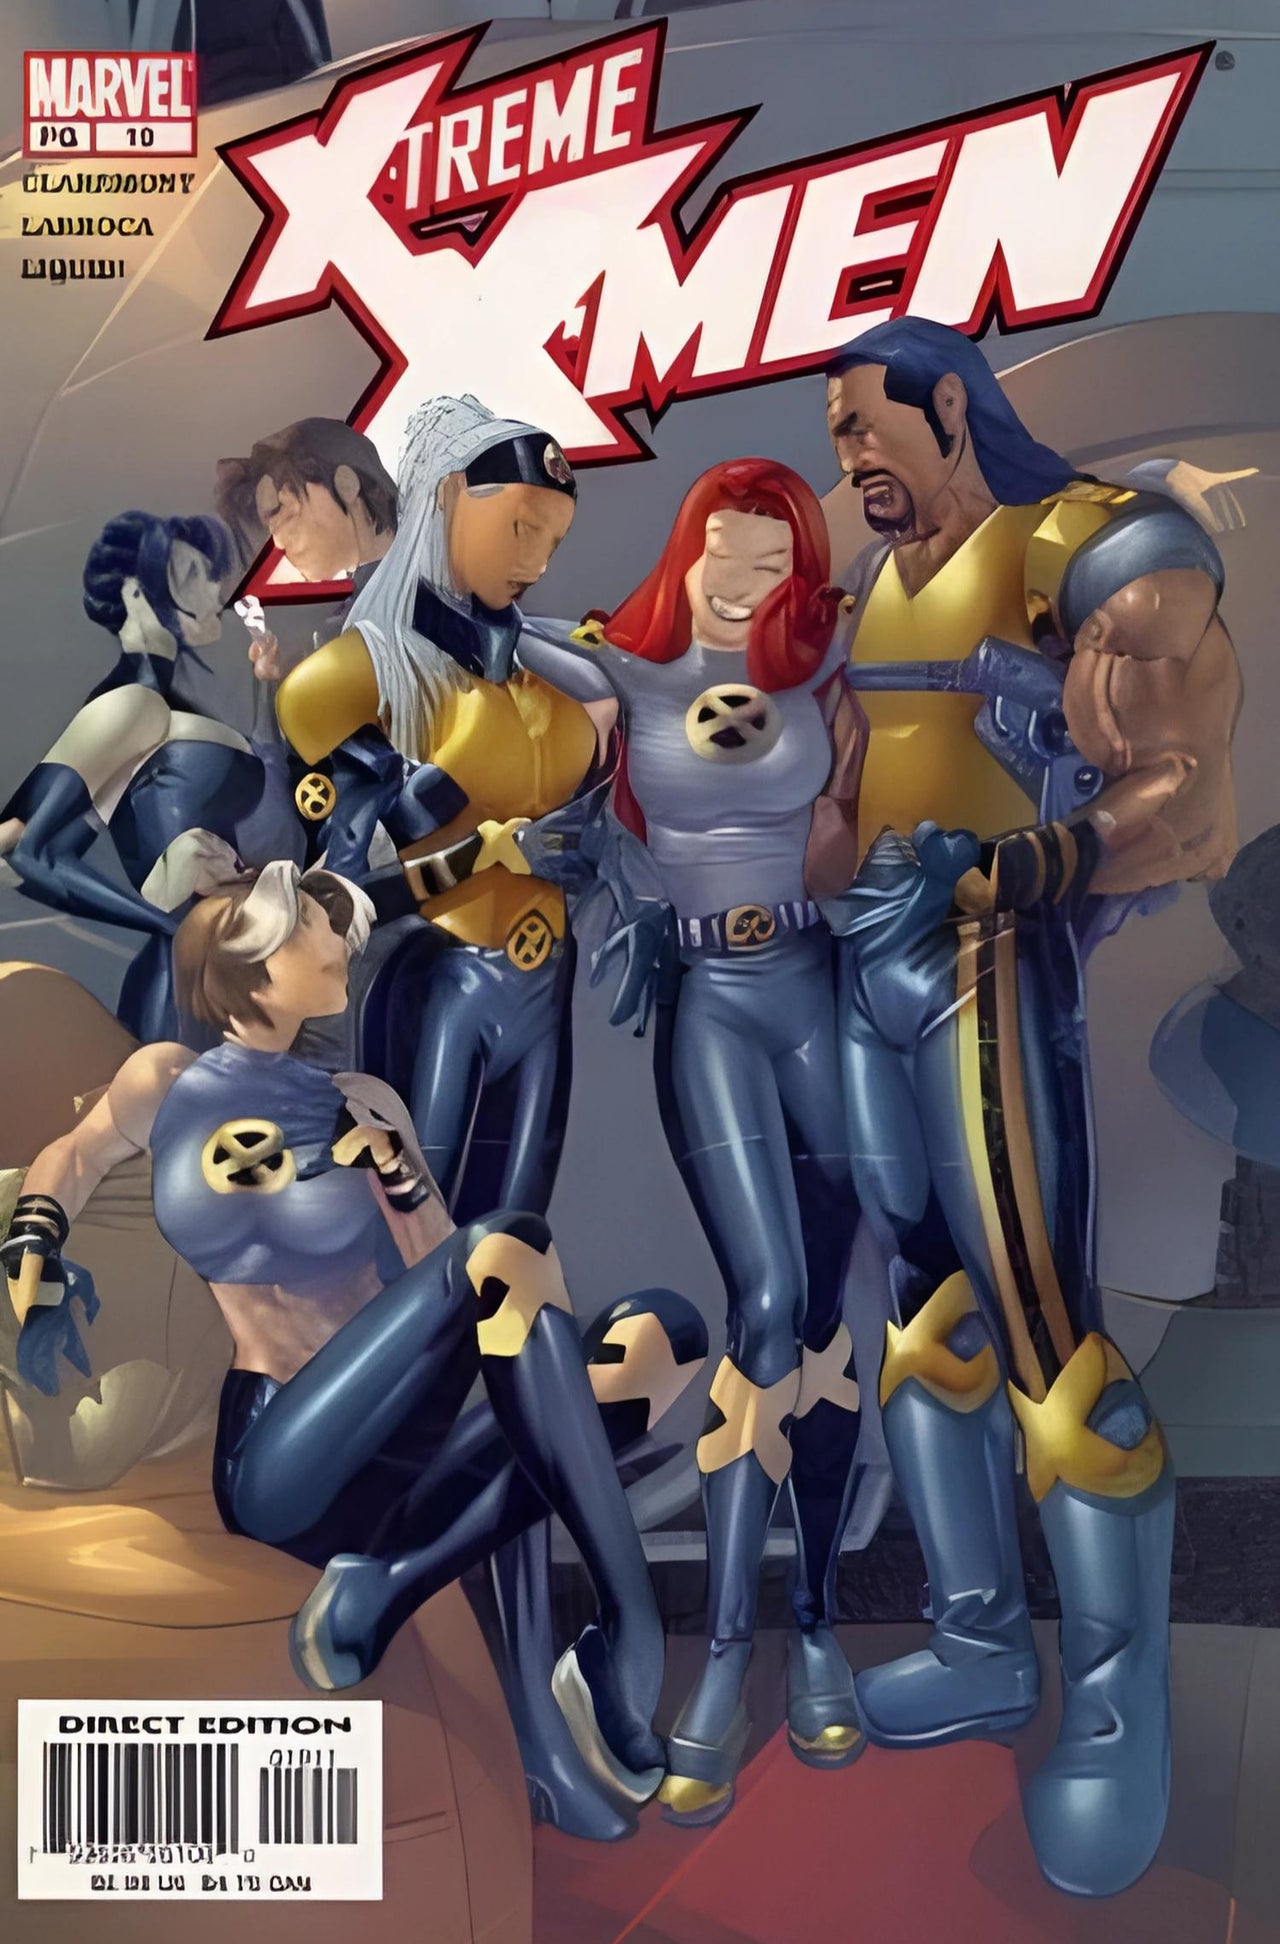 X-Treme X-Men (2001) #19